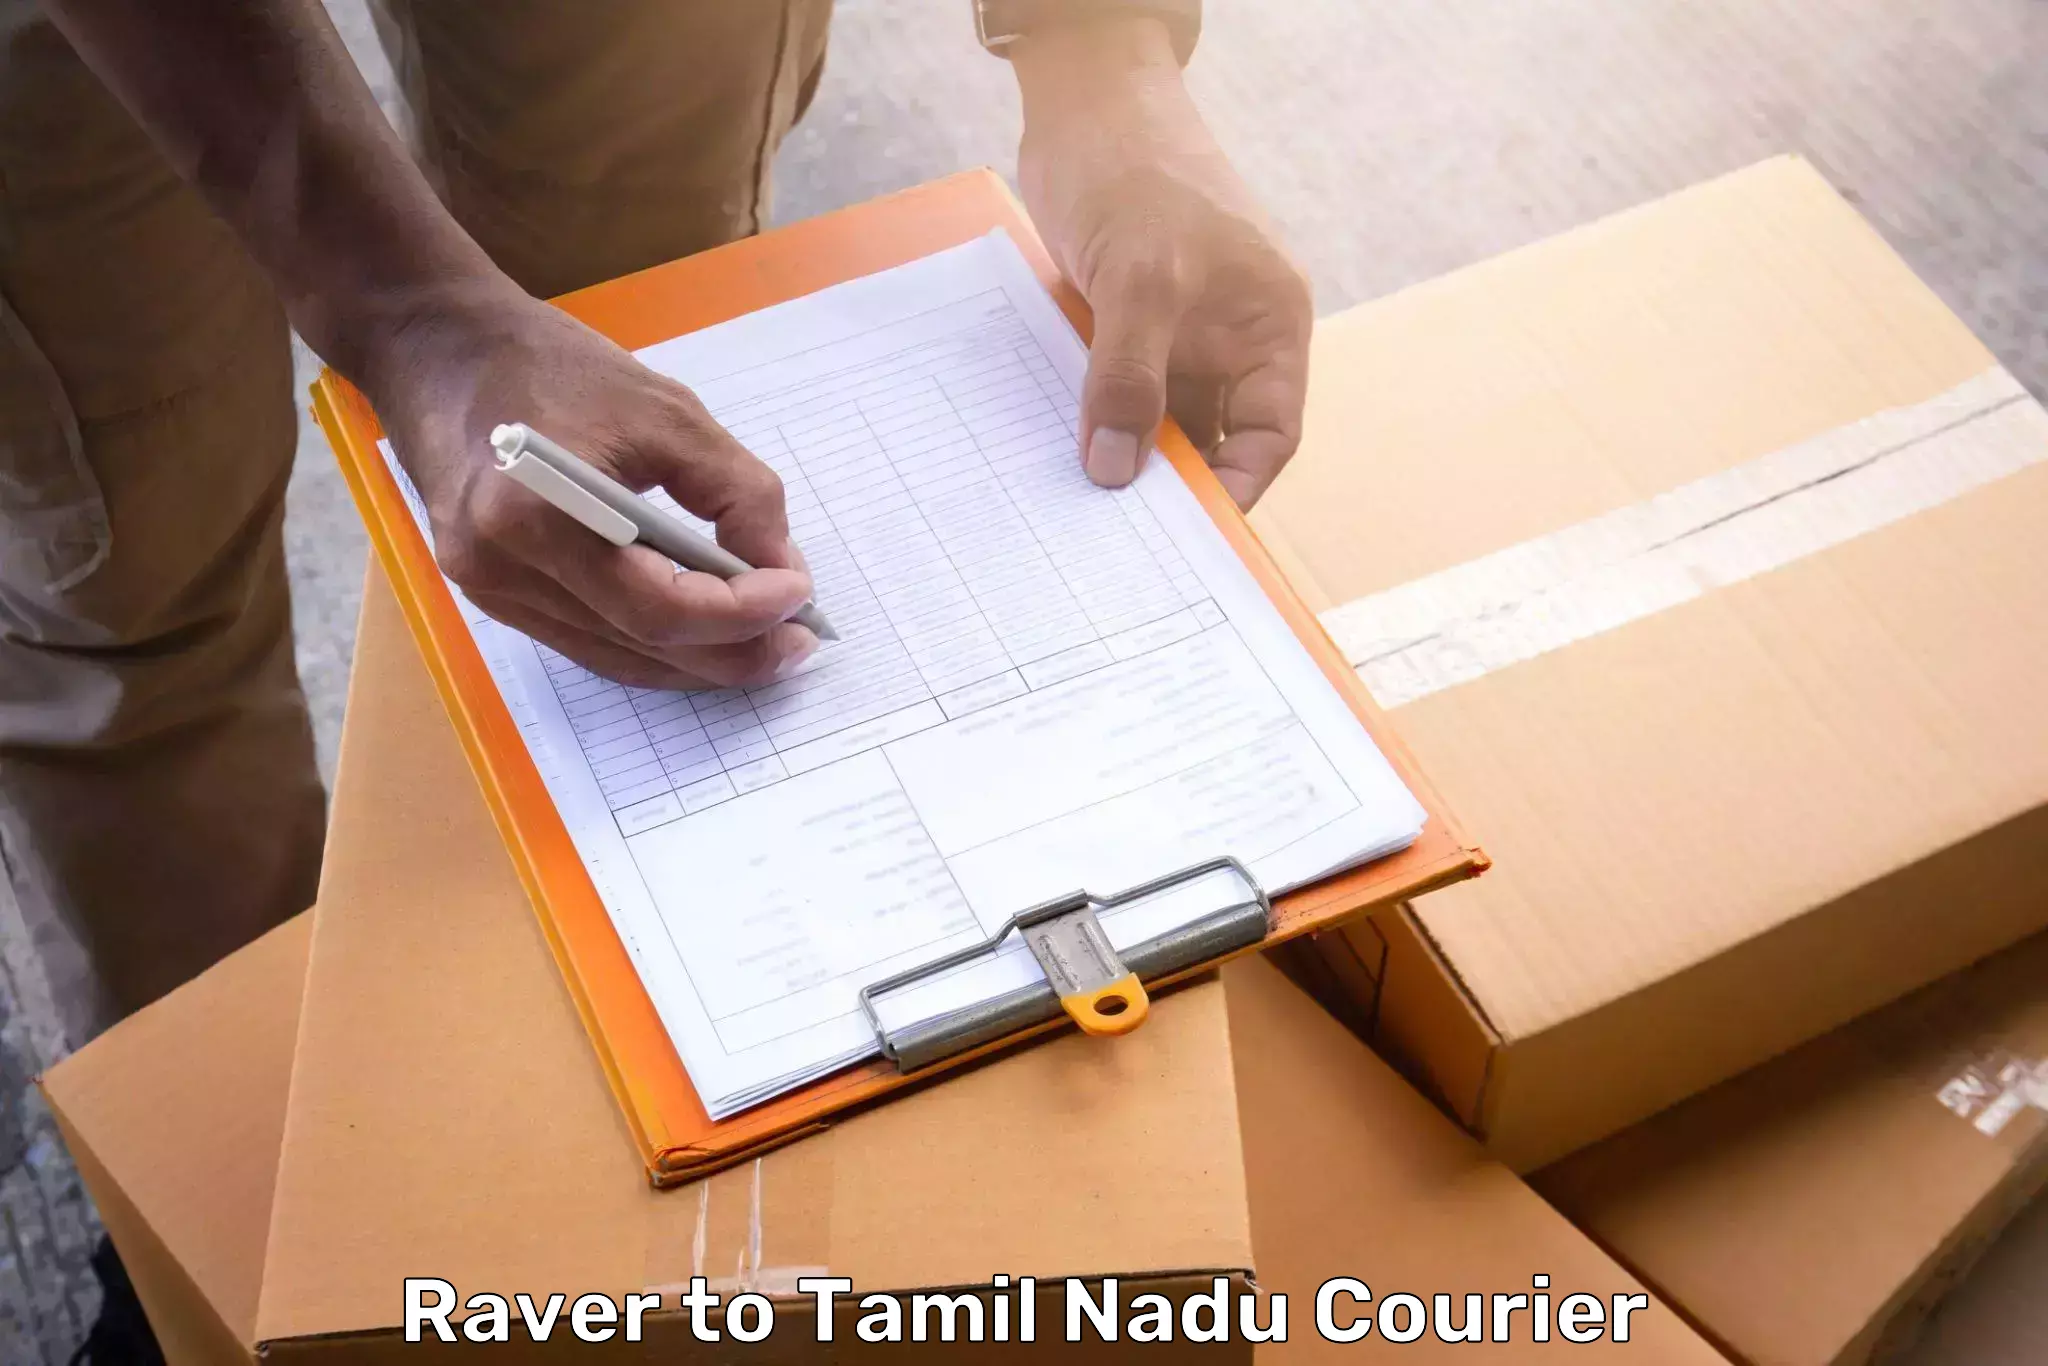 Baggage transport network Raver to Thirukkattupalli